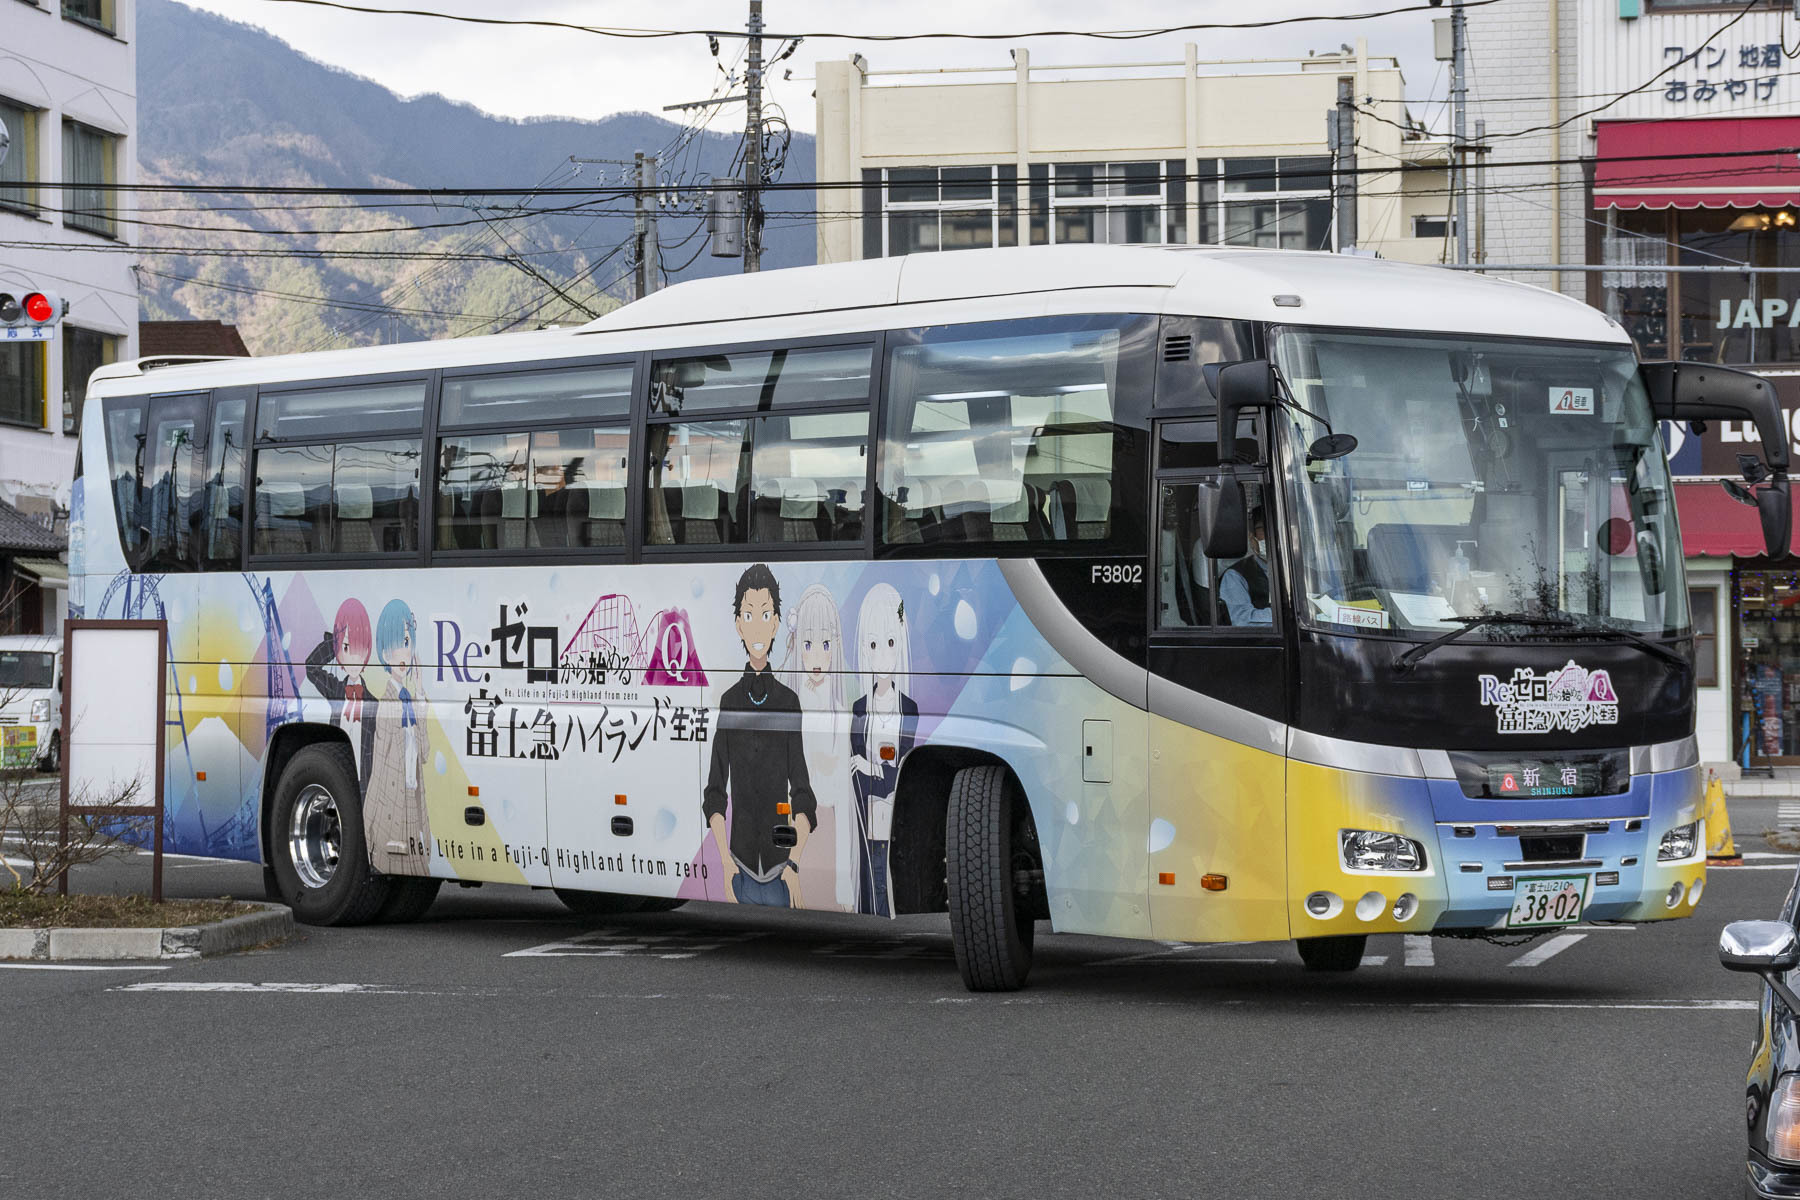 富士急バス / Re:ゼロから始める富士急ハイランド生活ラッピングバス_d0226909_12461911.jpg